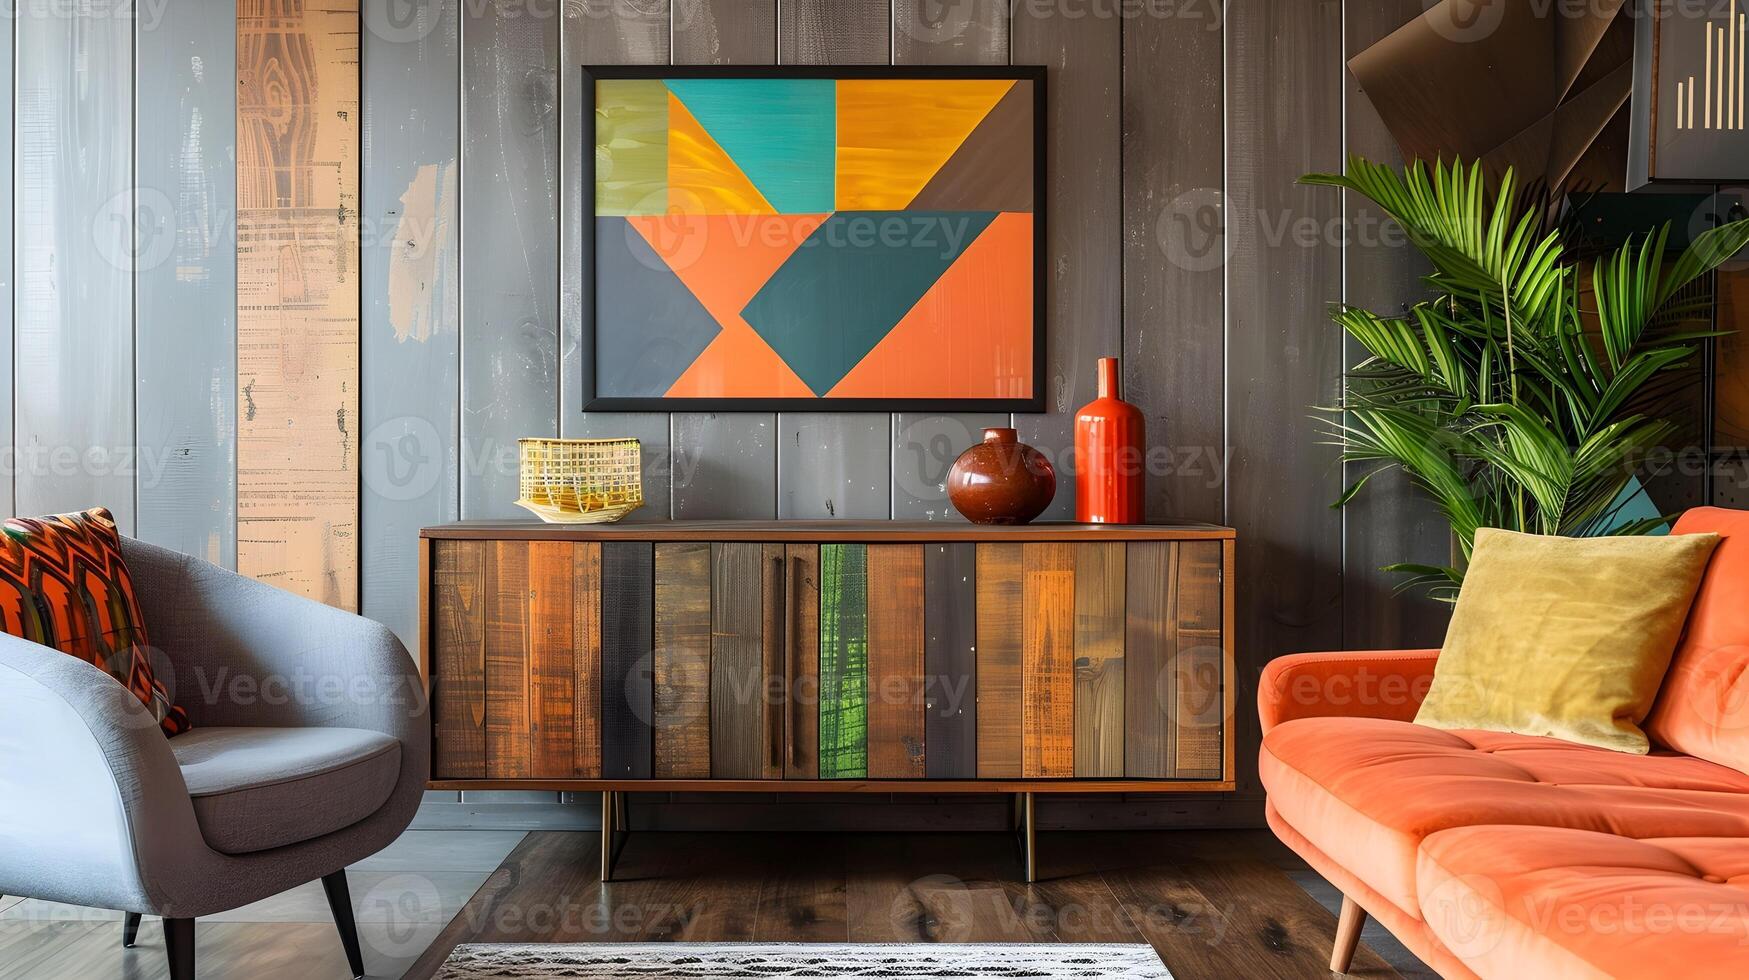 convidativo moderno rústico vivo quarto com geométrico abstrato obra de arte e vibrante cor paleta foto